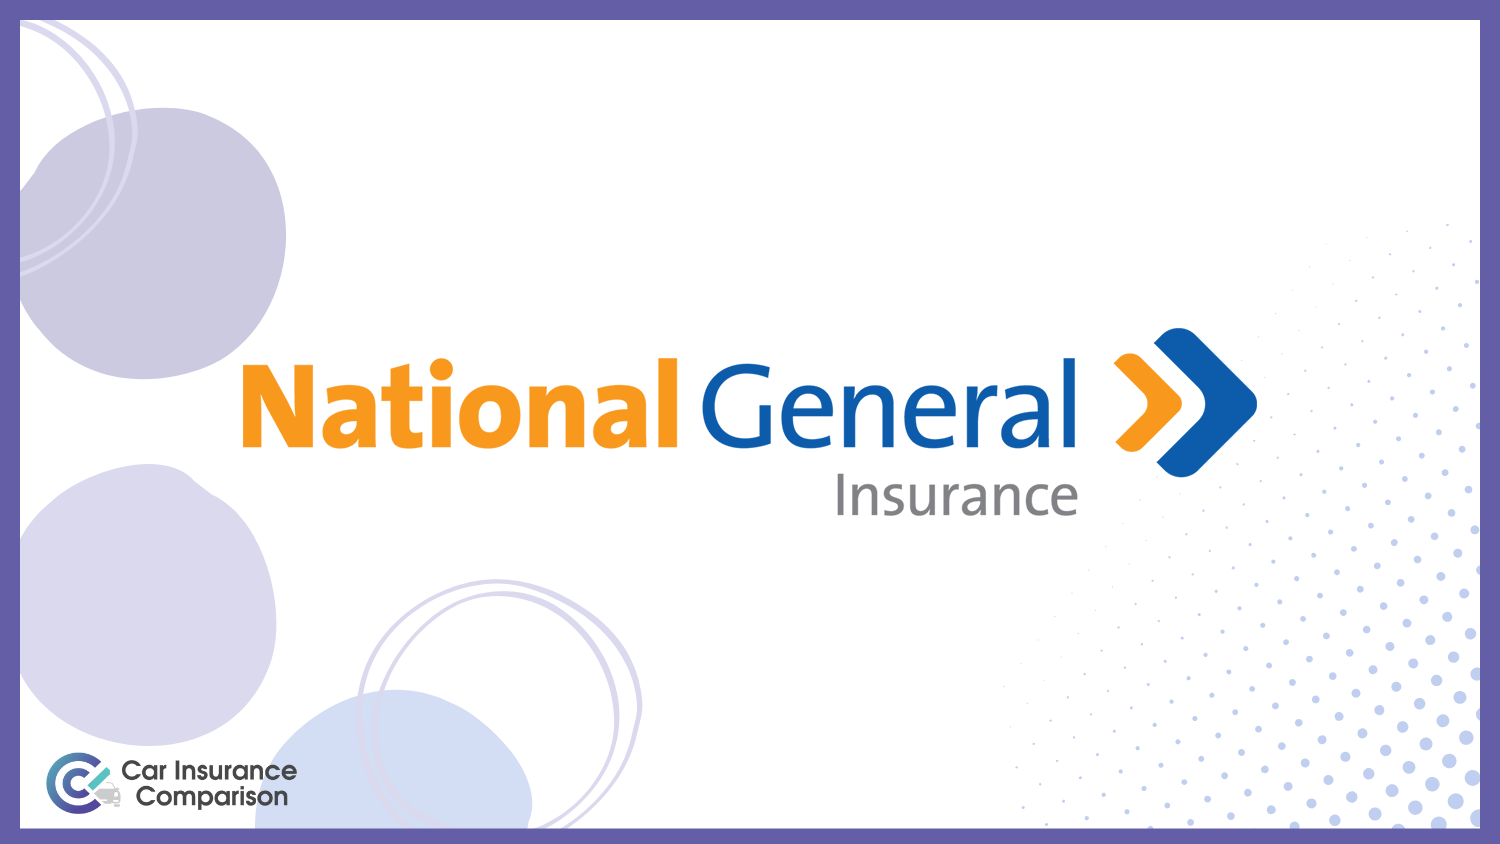 National General: Best Car Insurance for Seniors Over 60